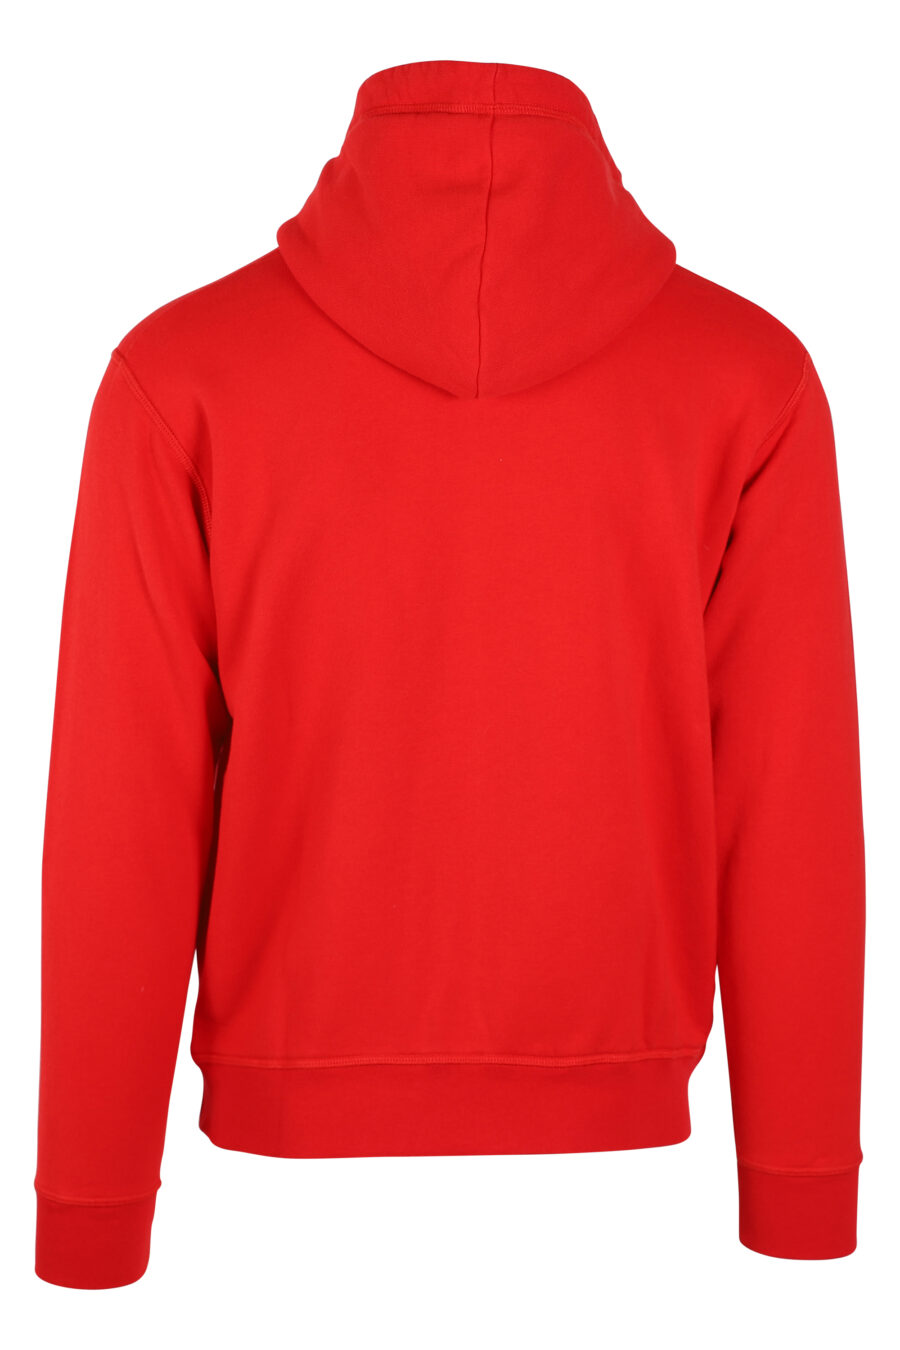 Sudadera roja con capucha y cremallera doble logo "icon" - IMG 0634